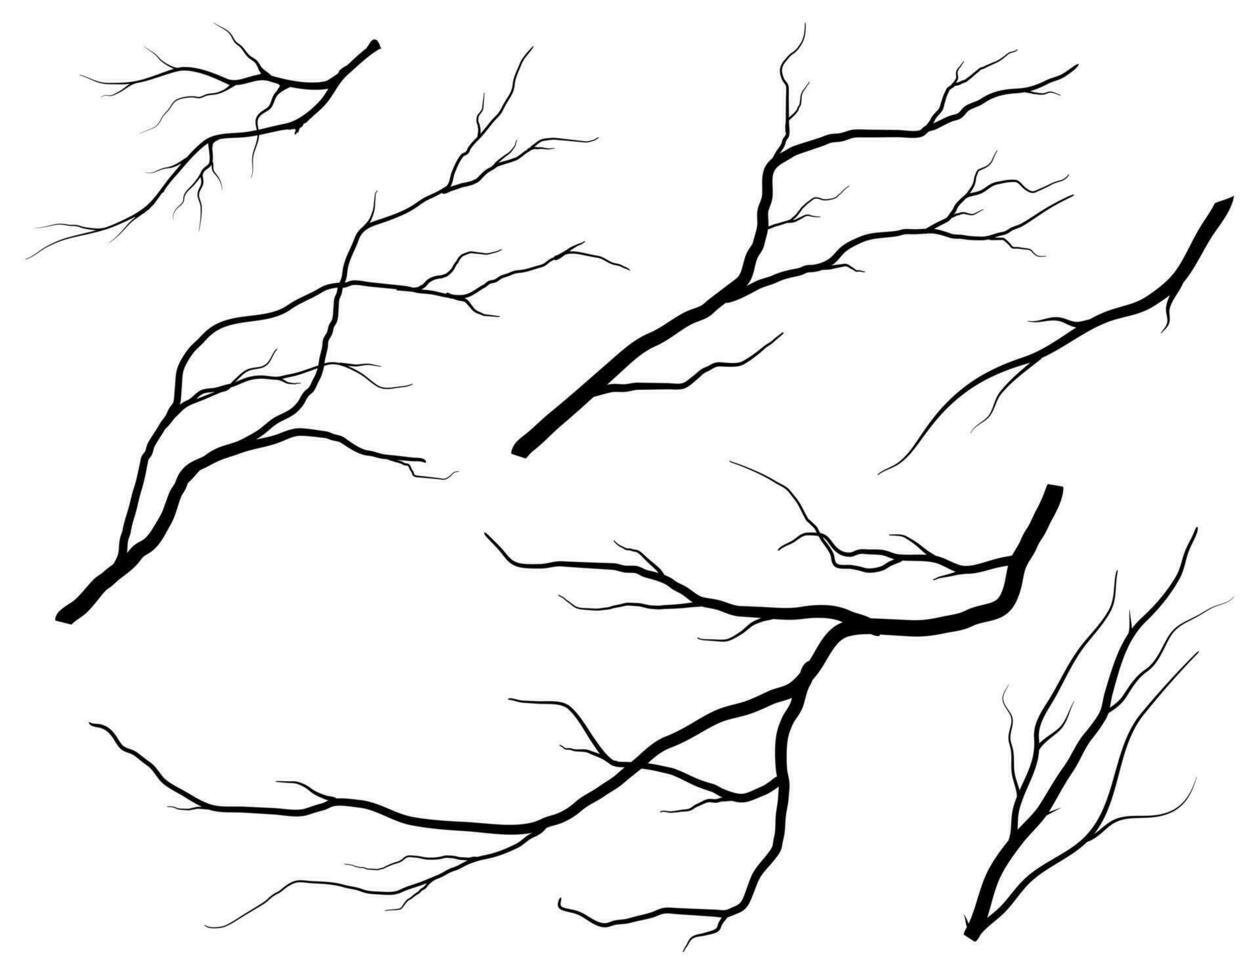 árvore de galho preto ou conjunto de silhuetas de árvores nuas. ilustrações isoladas desenhadas à mão. vetor